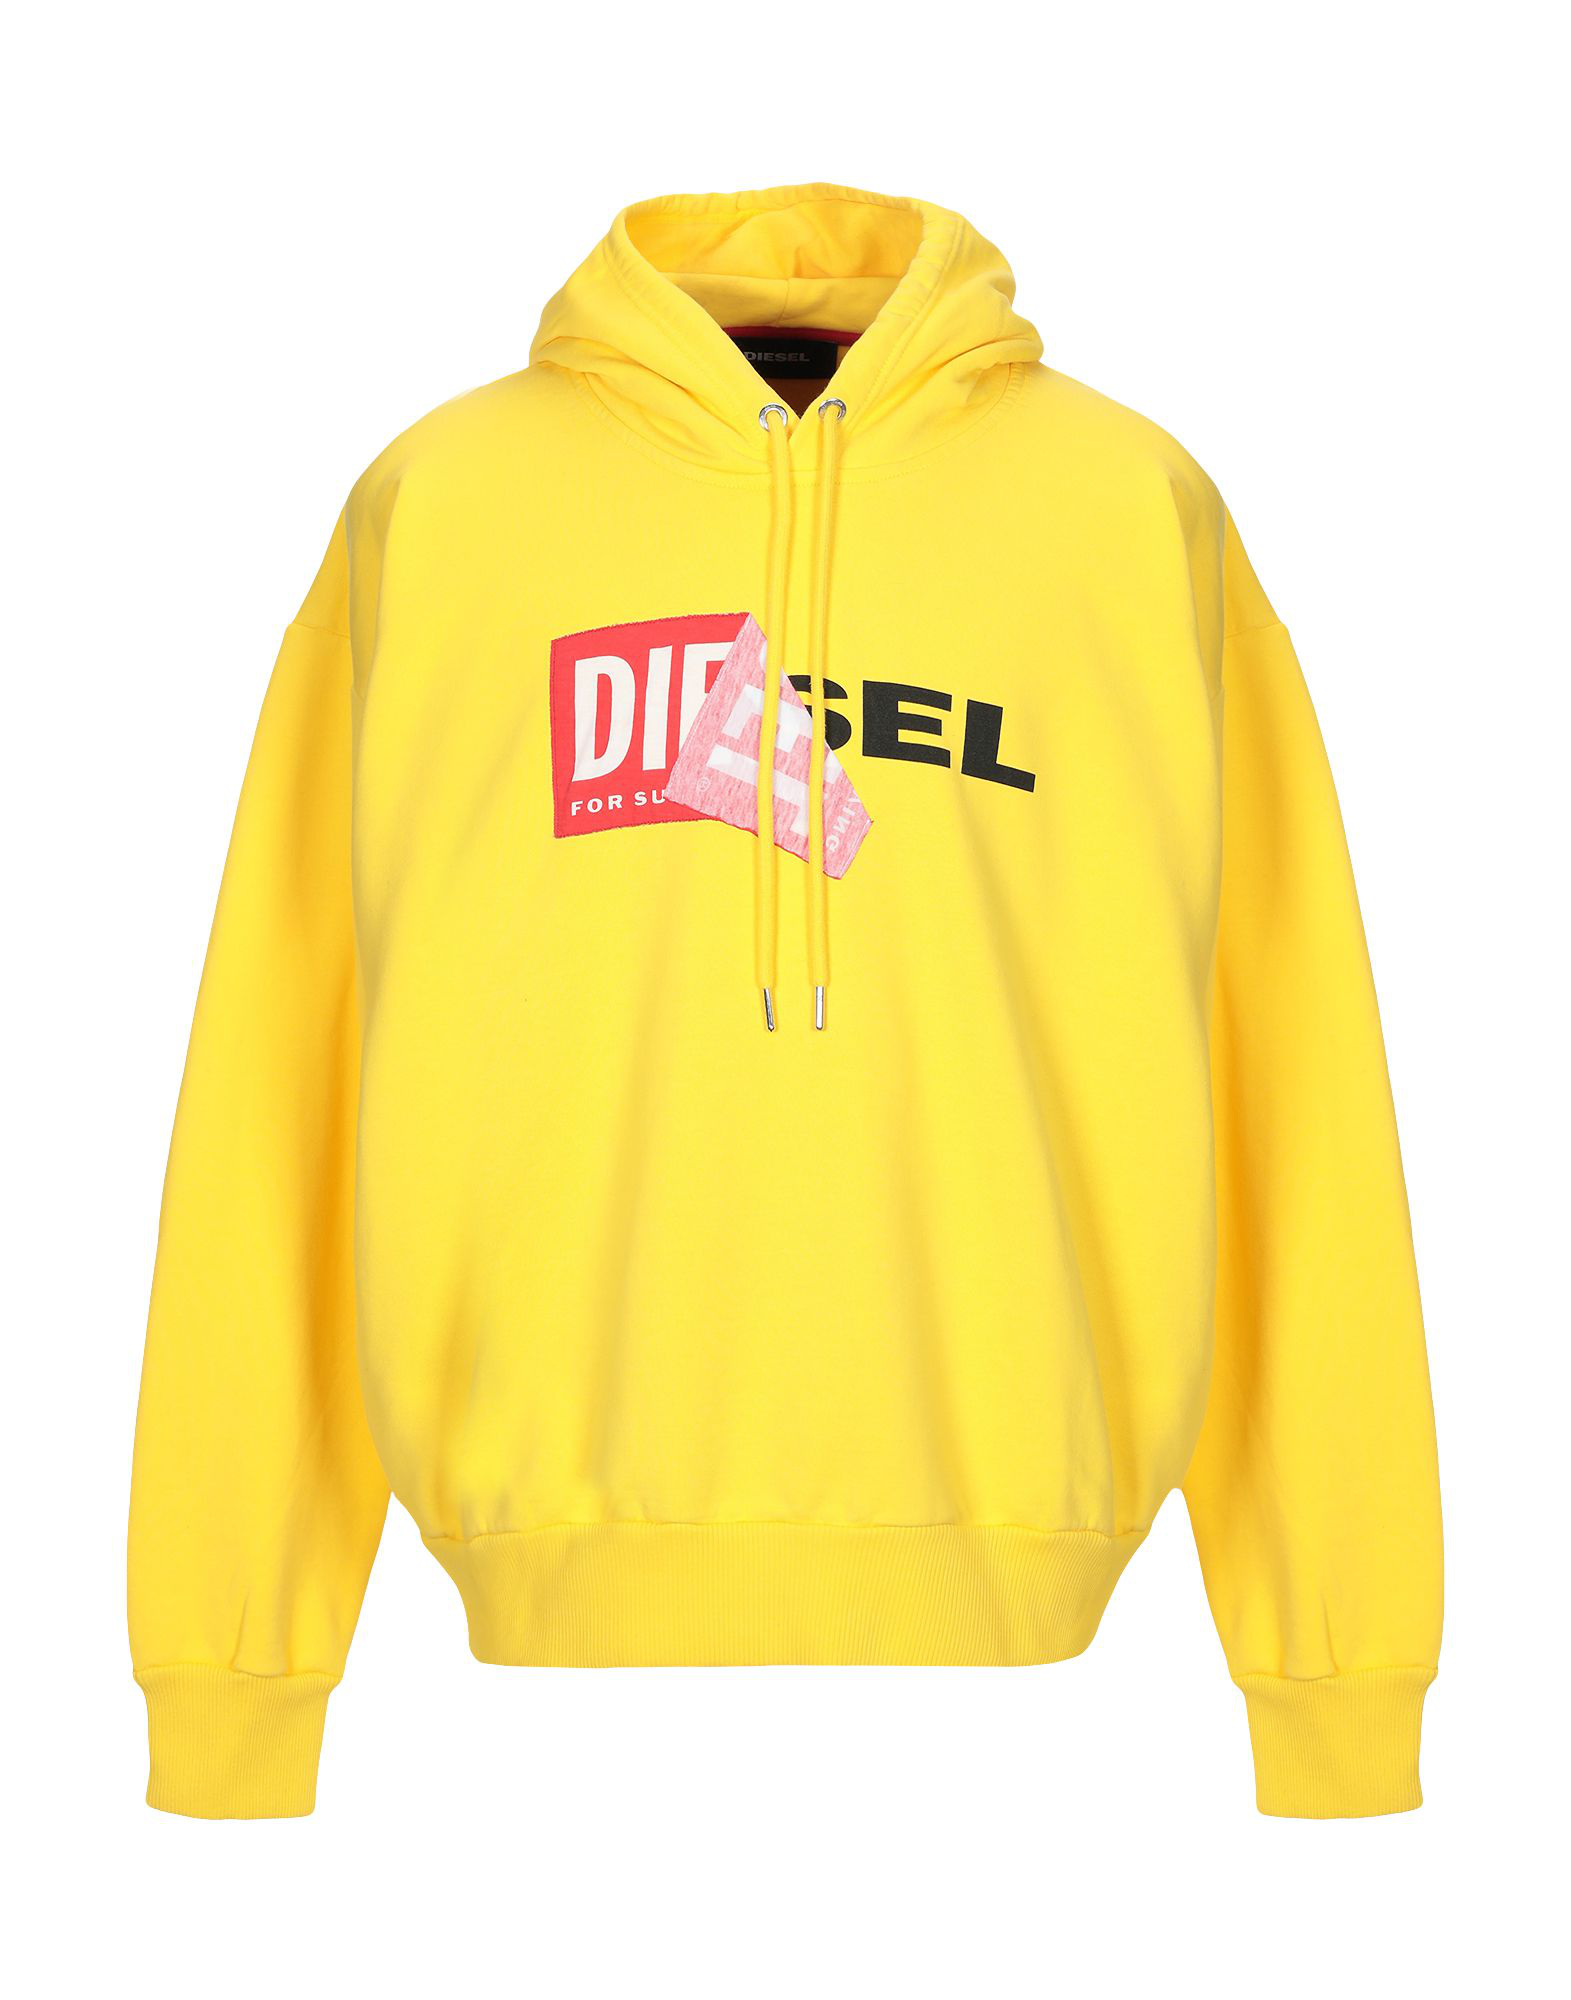 Diesel Hooded Sweatshirt In Yellow | ModeSens